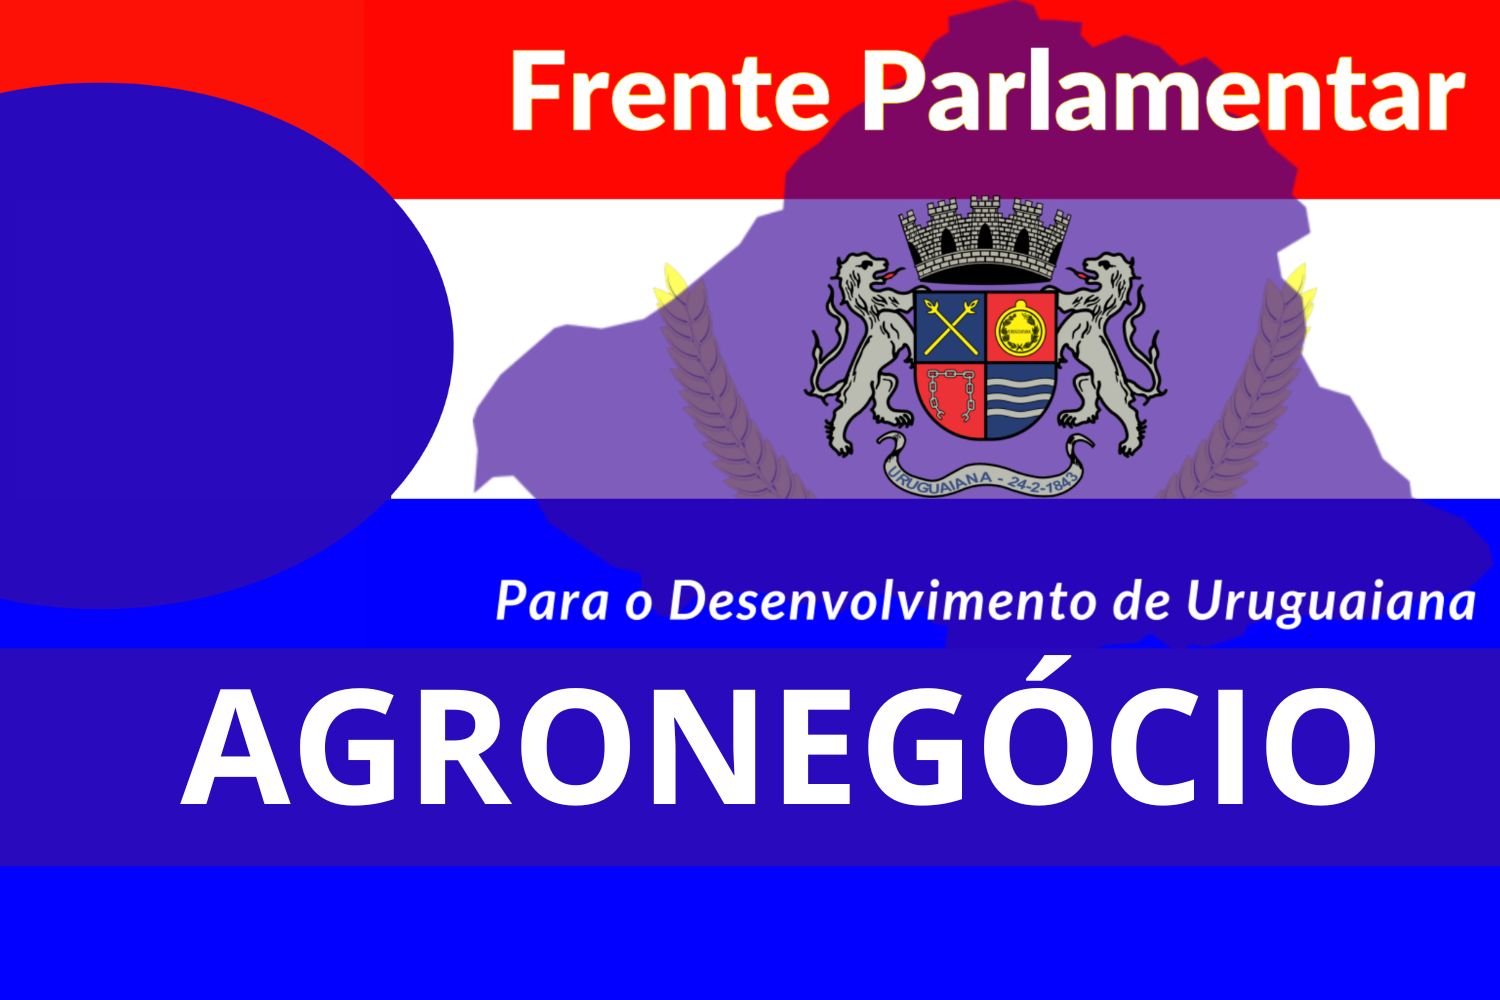  Agronegócio é tema de reunião da Frente Parlamentar de Desenvolvimento